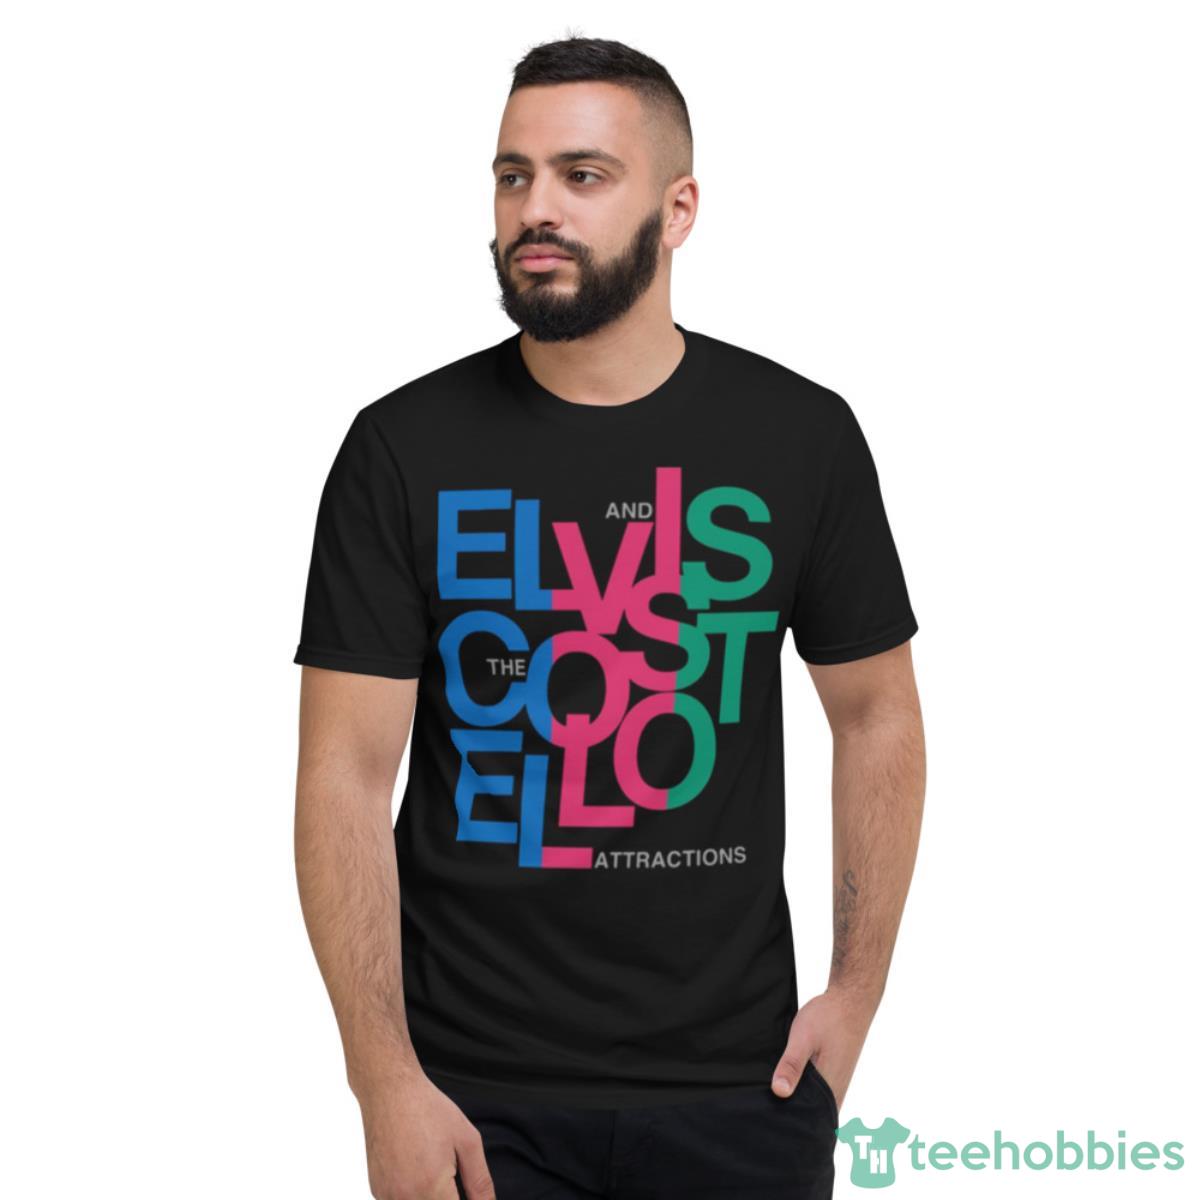 Musician Guitar Elvis Costello Shirt - Short Sleeve T-Shirt